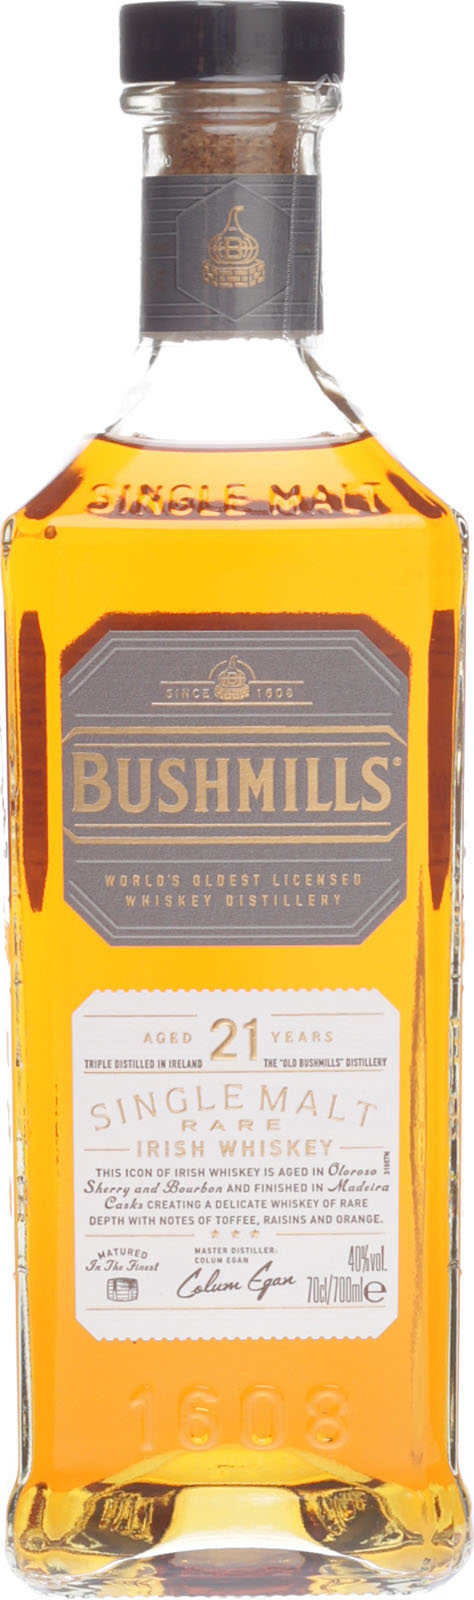 Bushmills Shop hier im 21 Jahre Whisky günstigen Irish